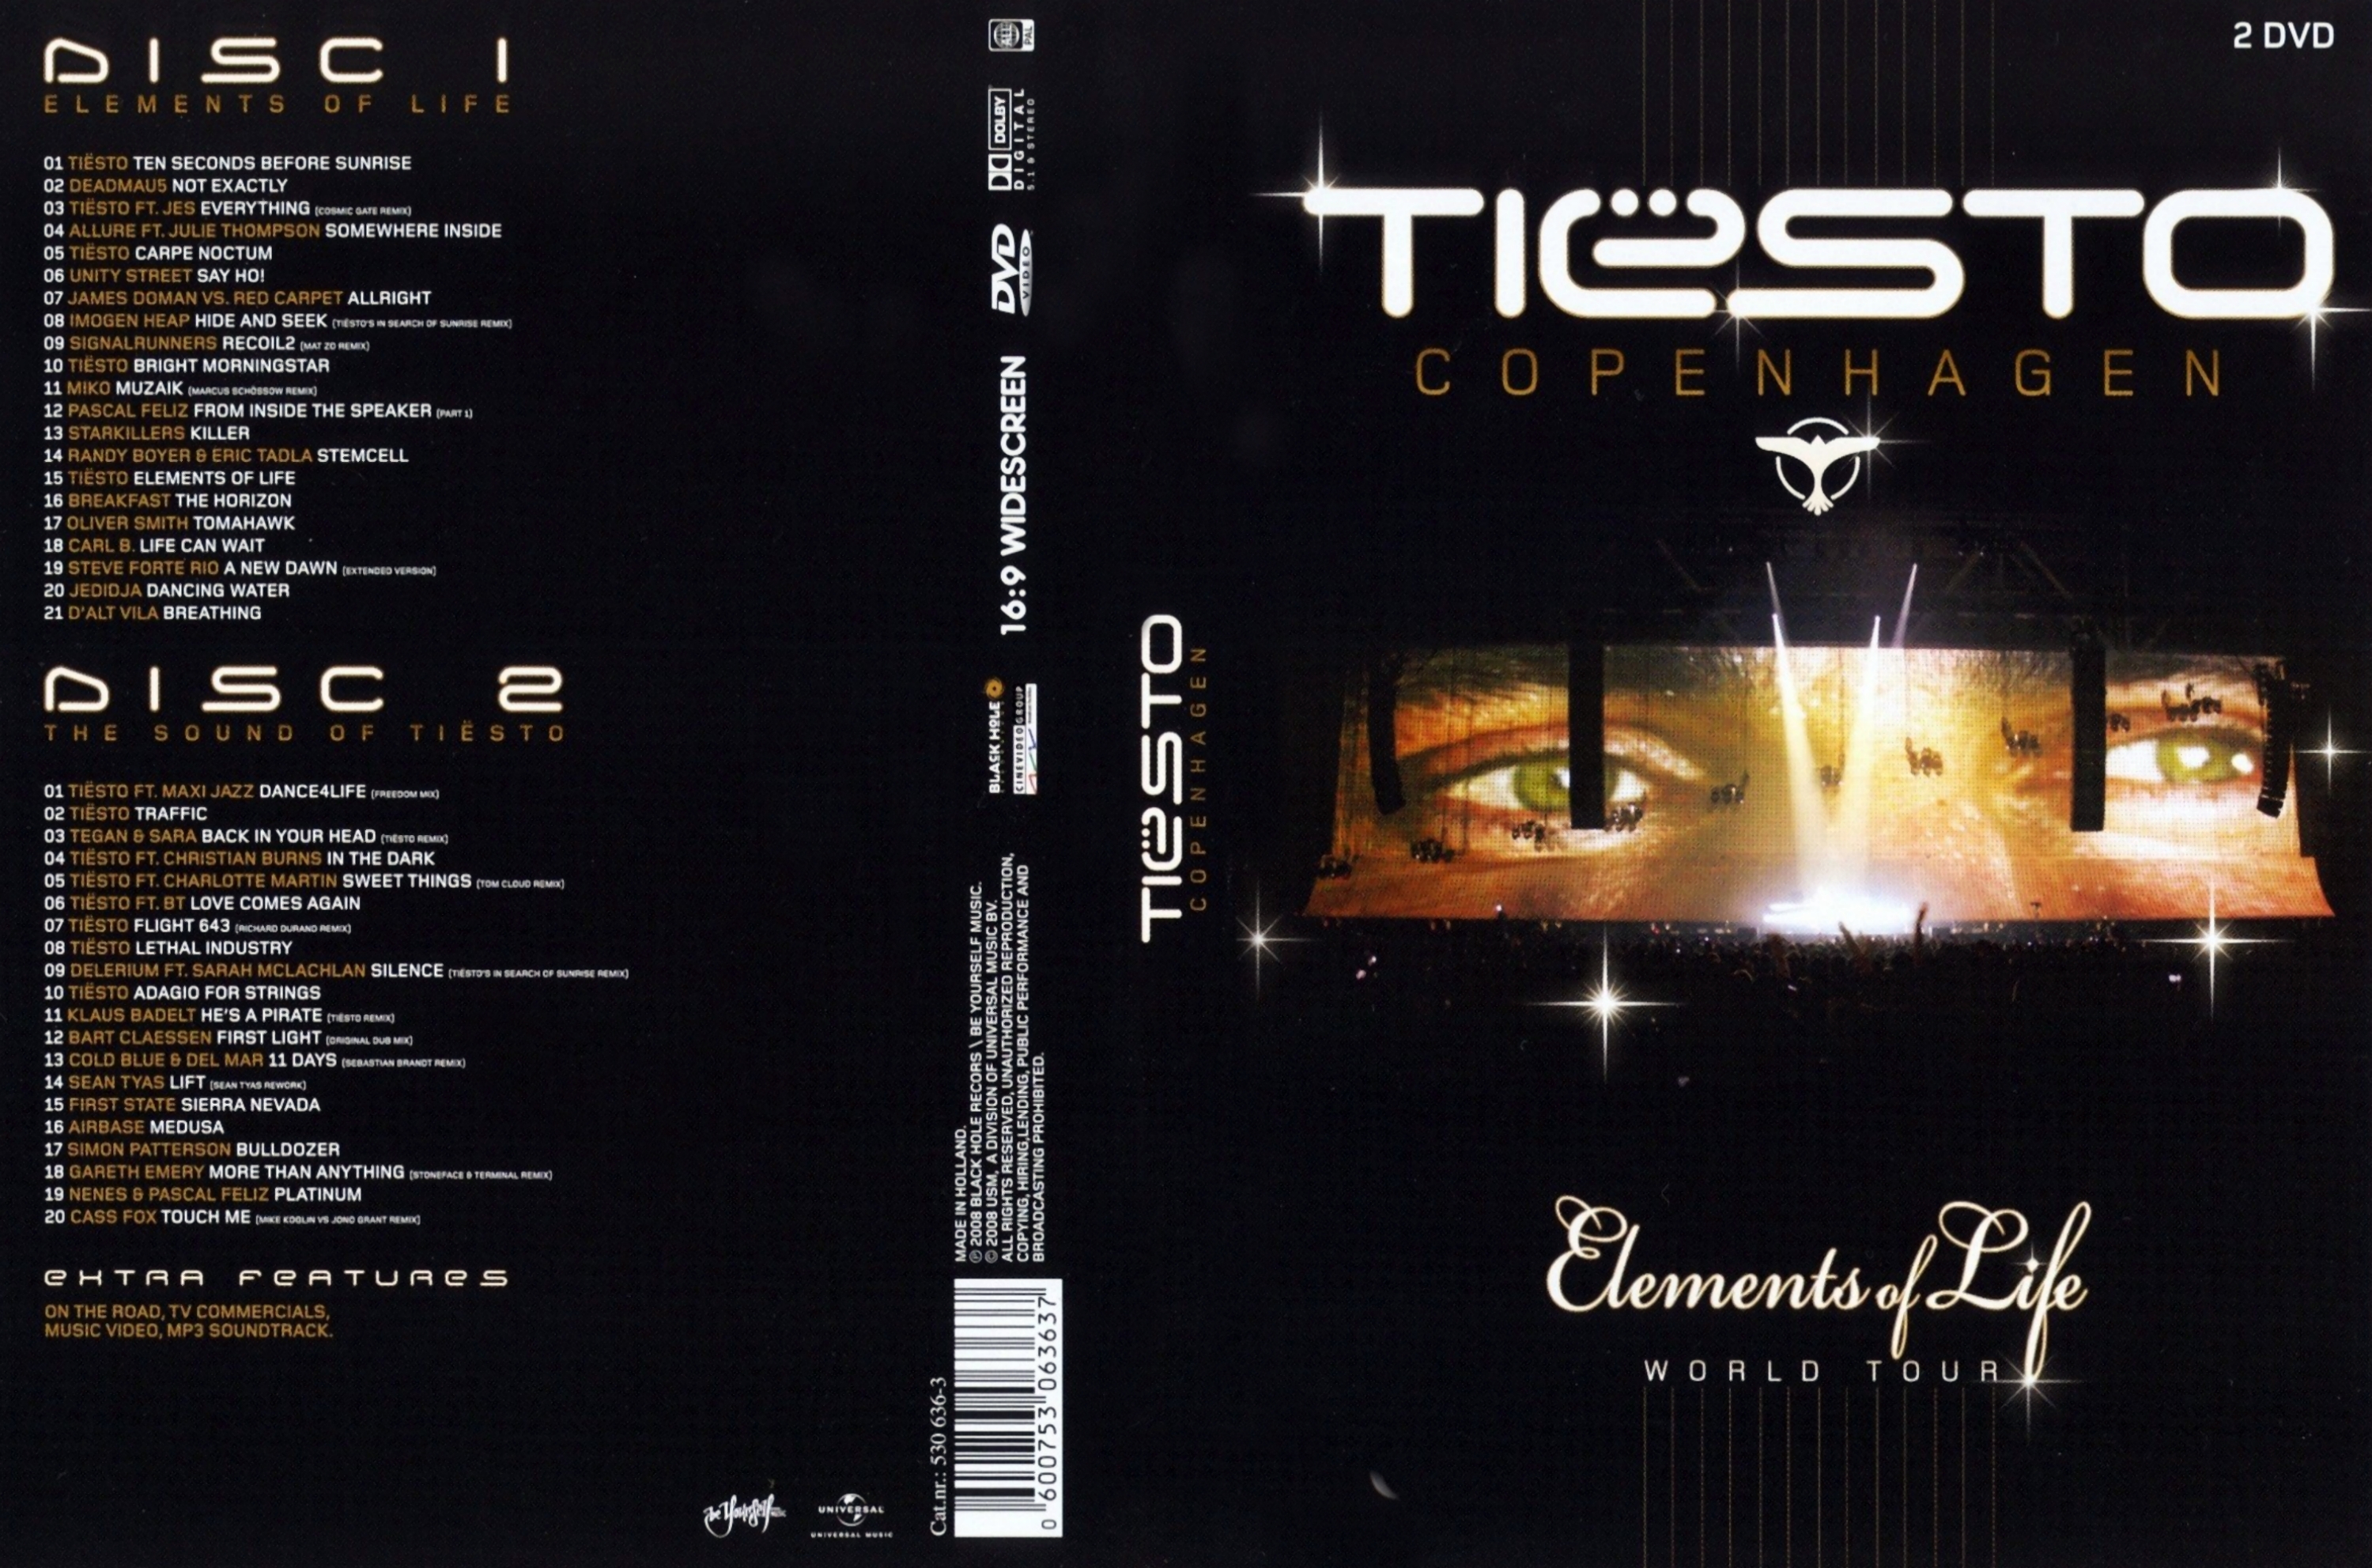 Elements of life. Tiesto альбом element. DVD обложка Tiesto - elements of Life. Диск Tiesto elements of Life. Elements of Life Tiësto.